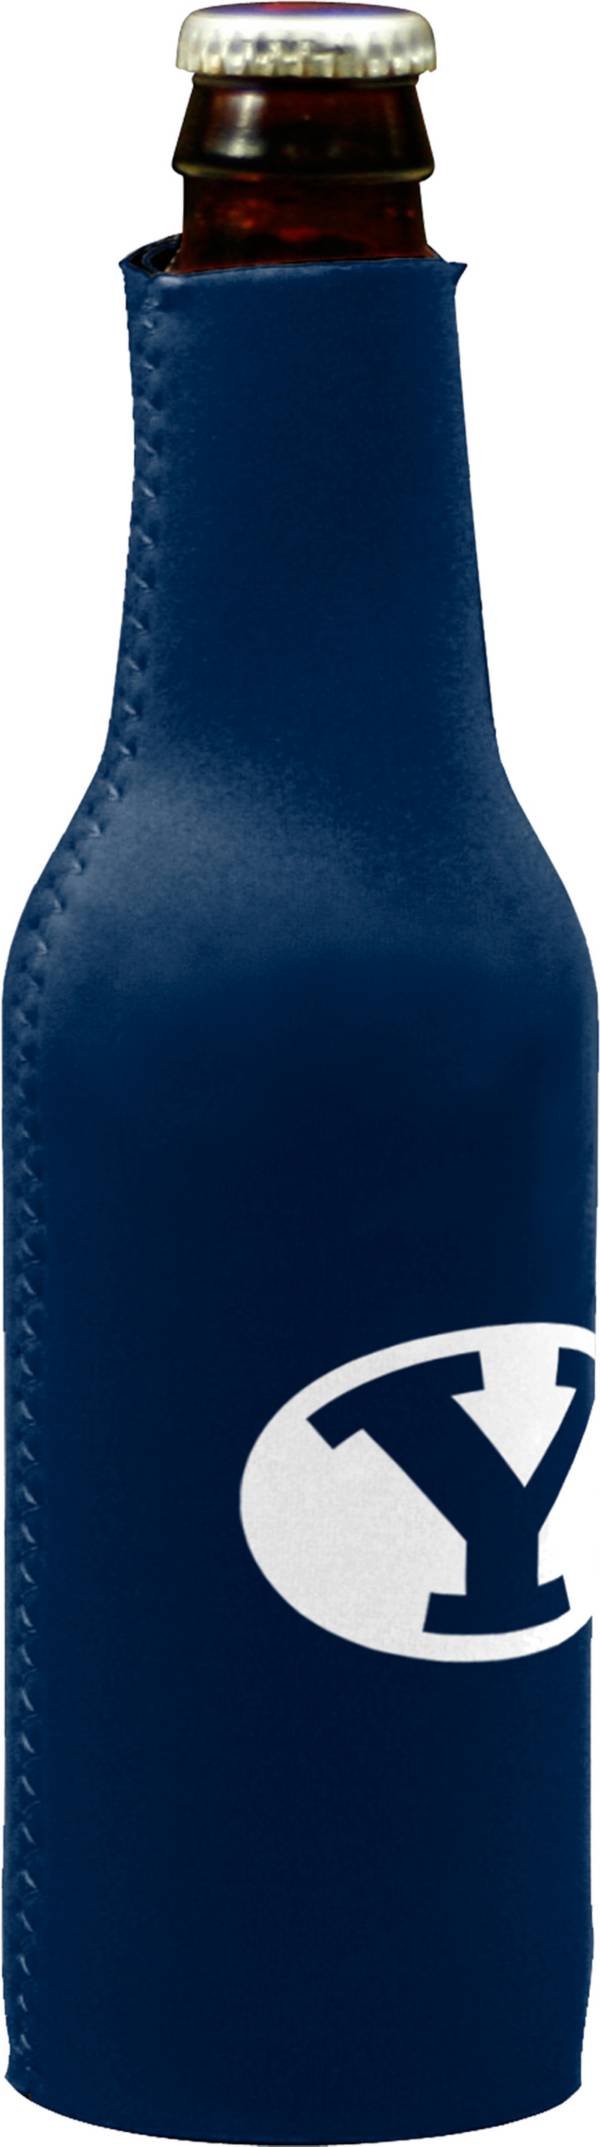 BYU Cougars Bottle Koozie product image